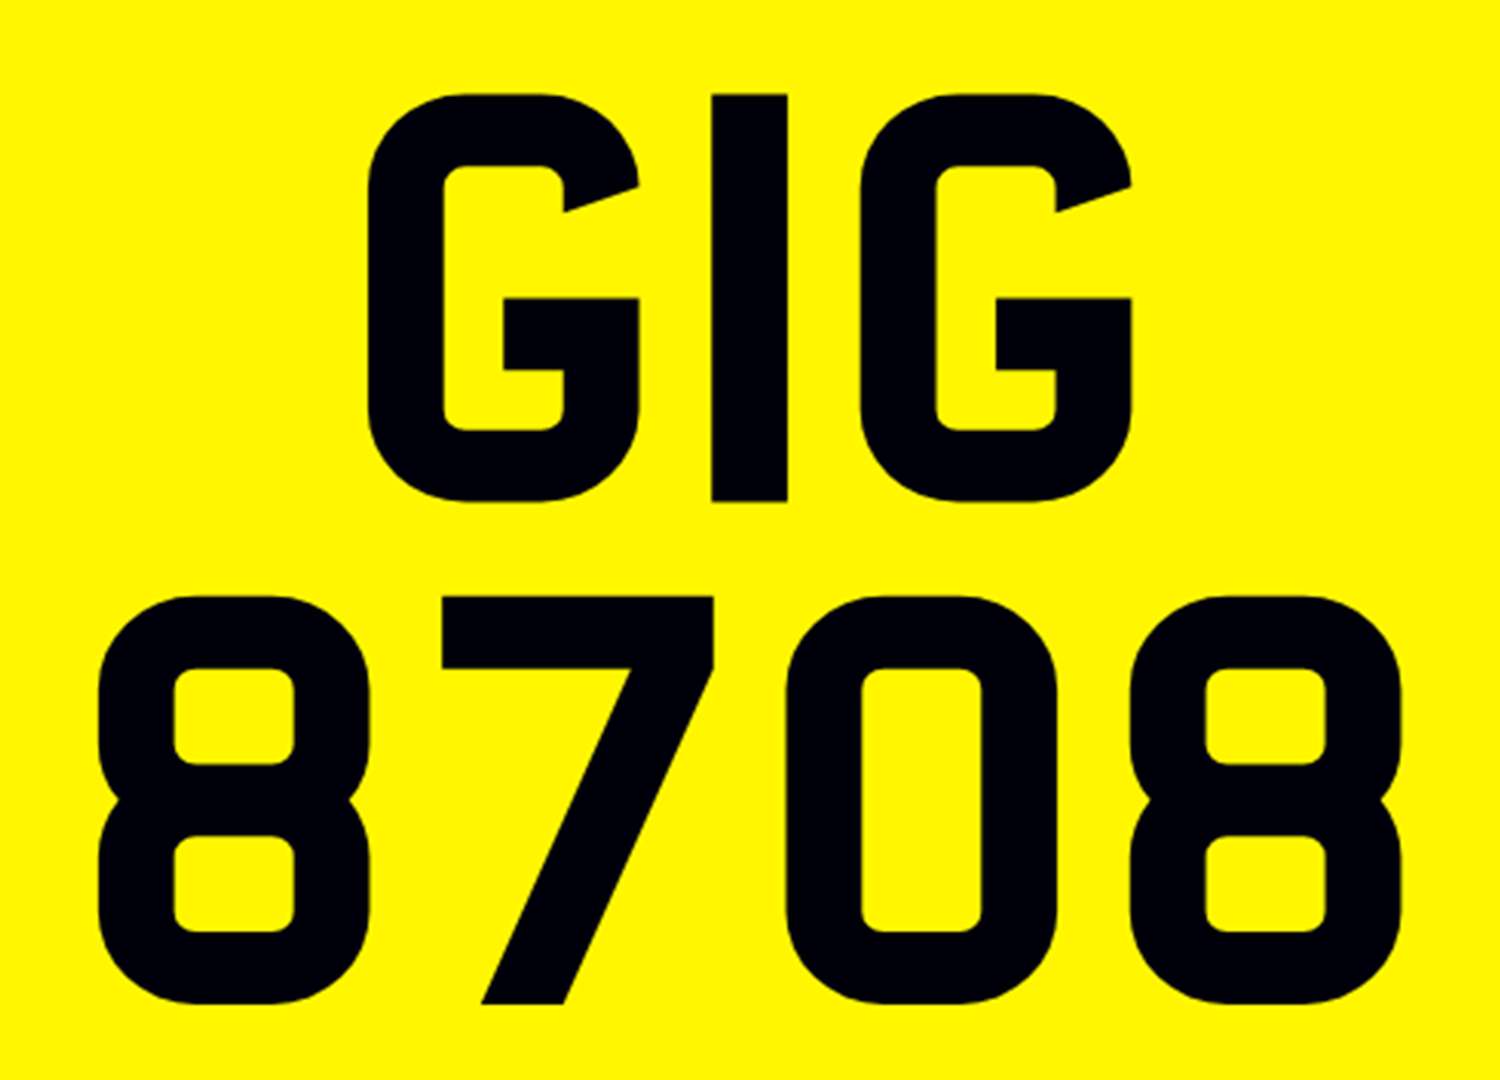 <p>&nbsp; GIG 8708 Registration Number&nbsp;</p>